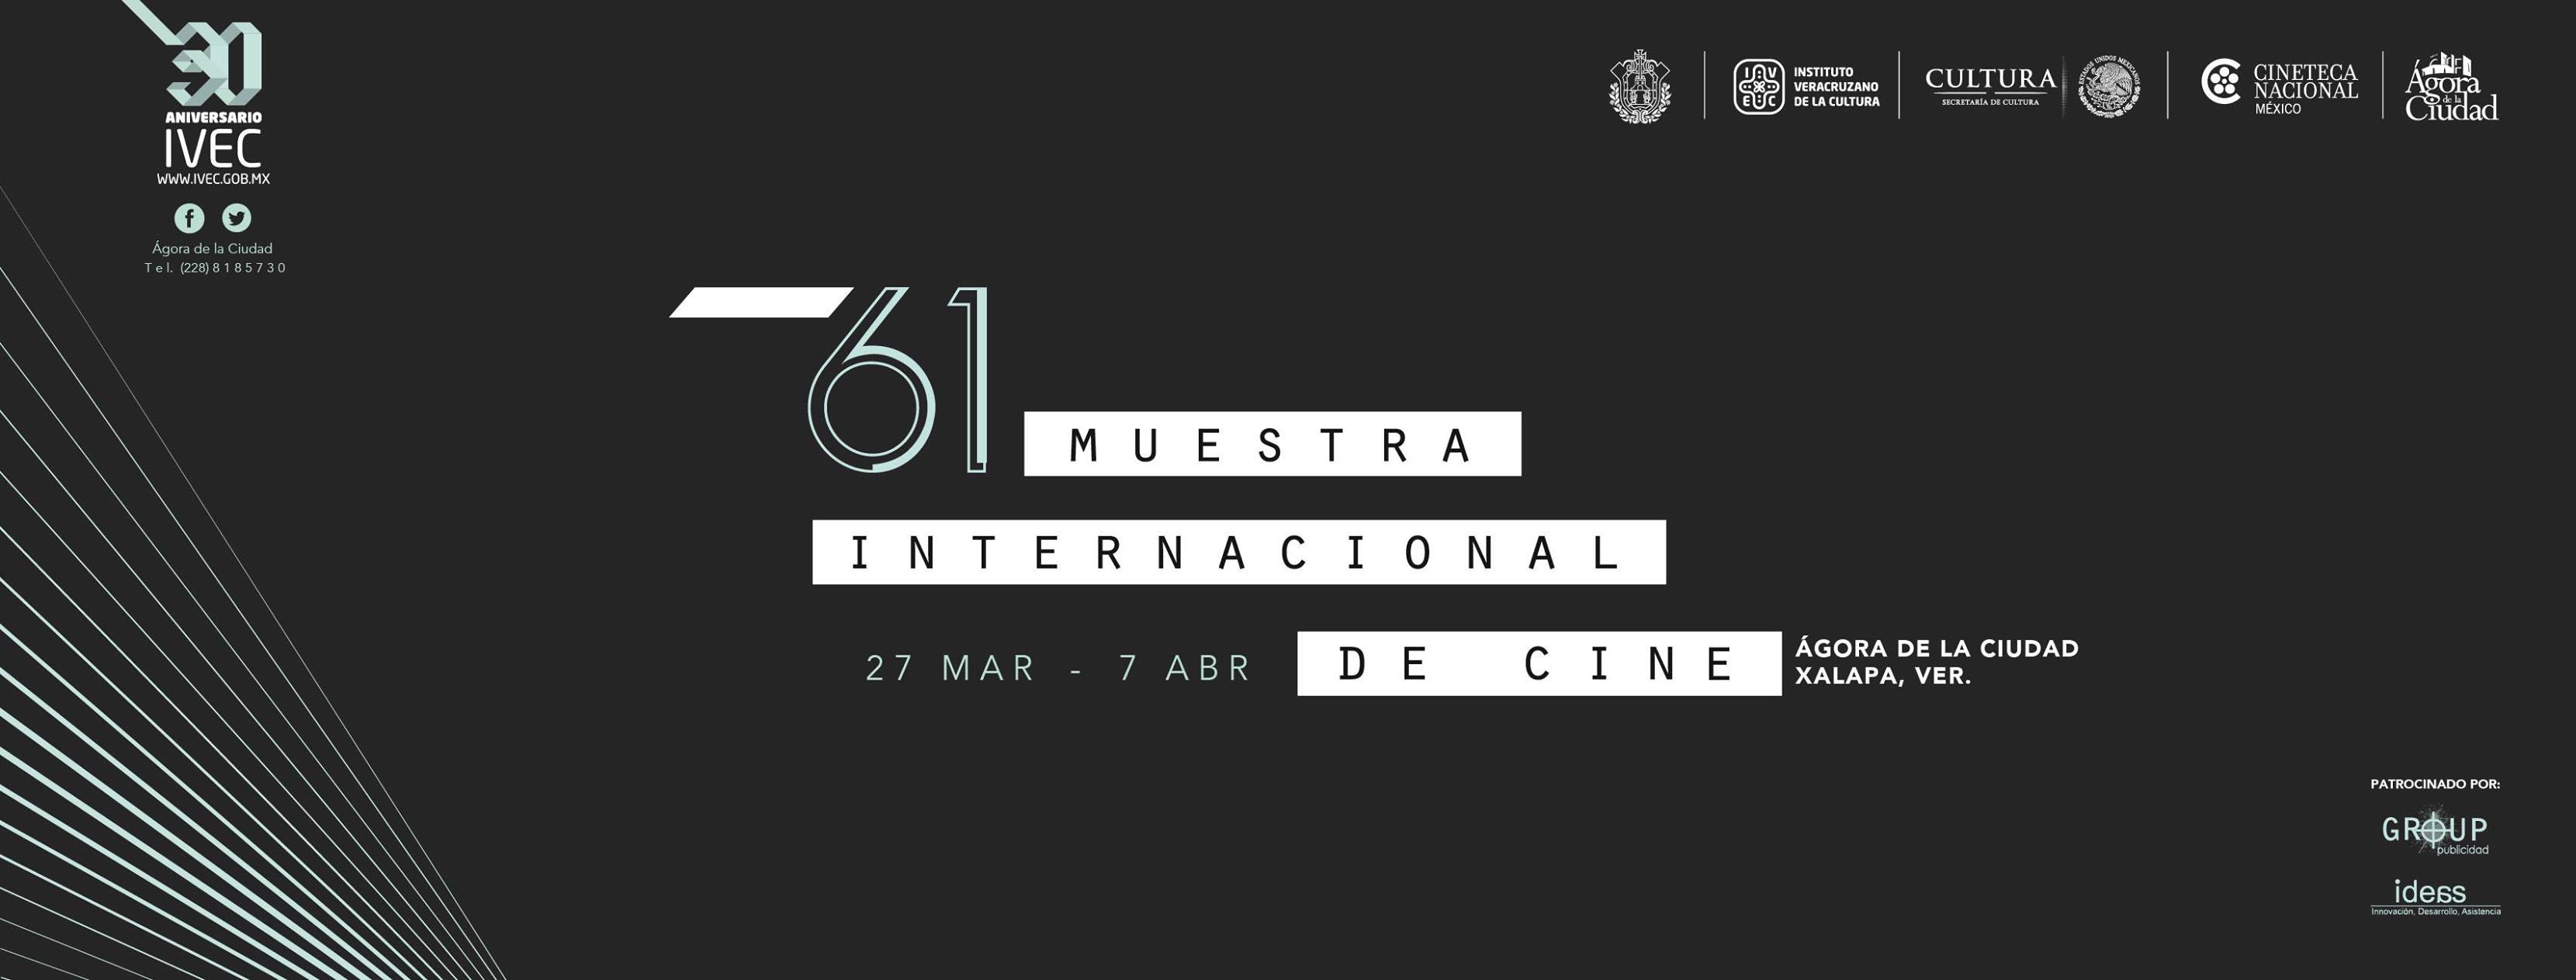 En Veracruz, presentarán la 61 muestra de la Cineteca Nacional